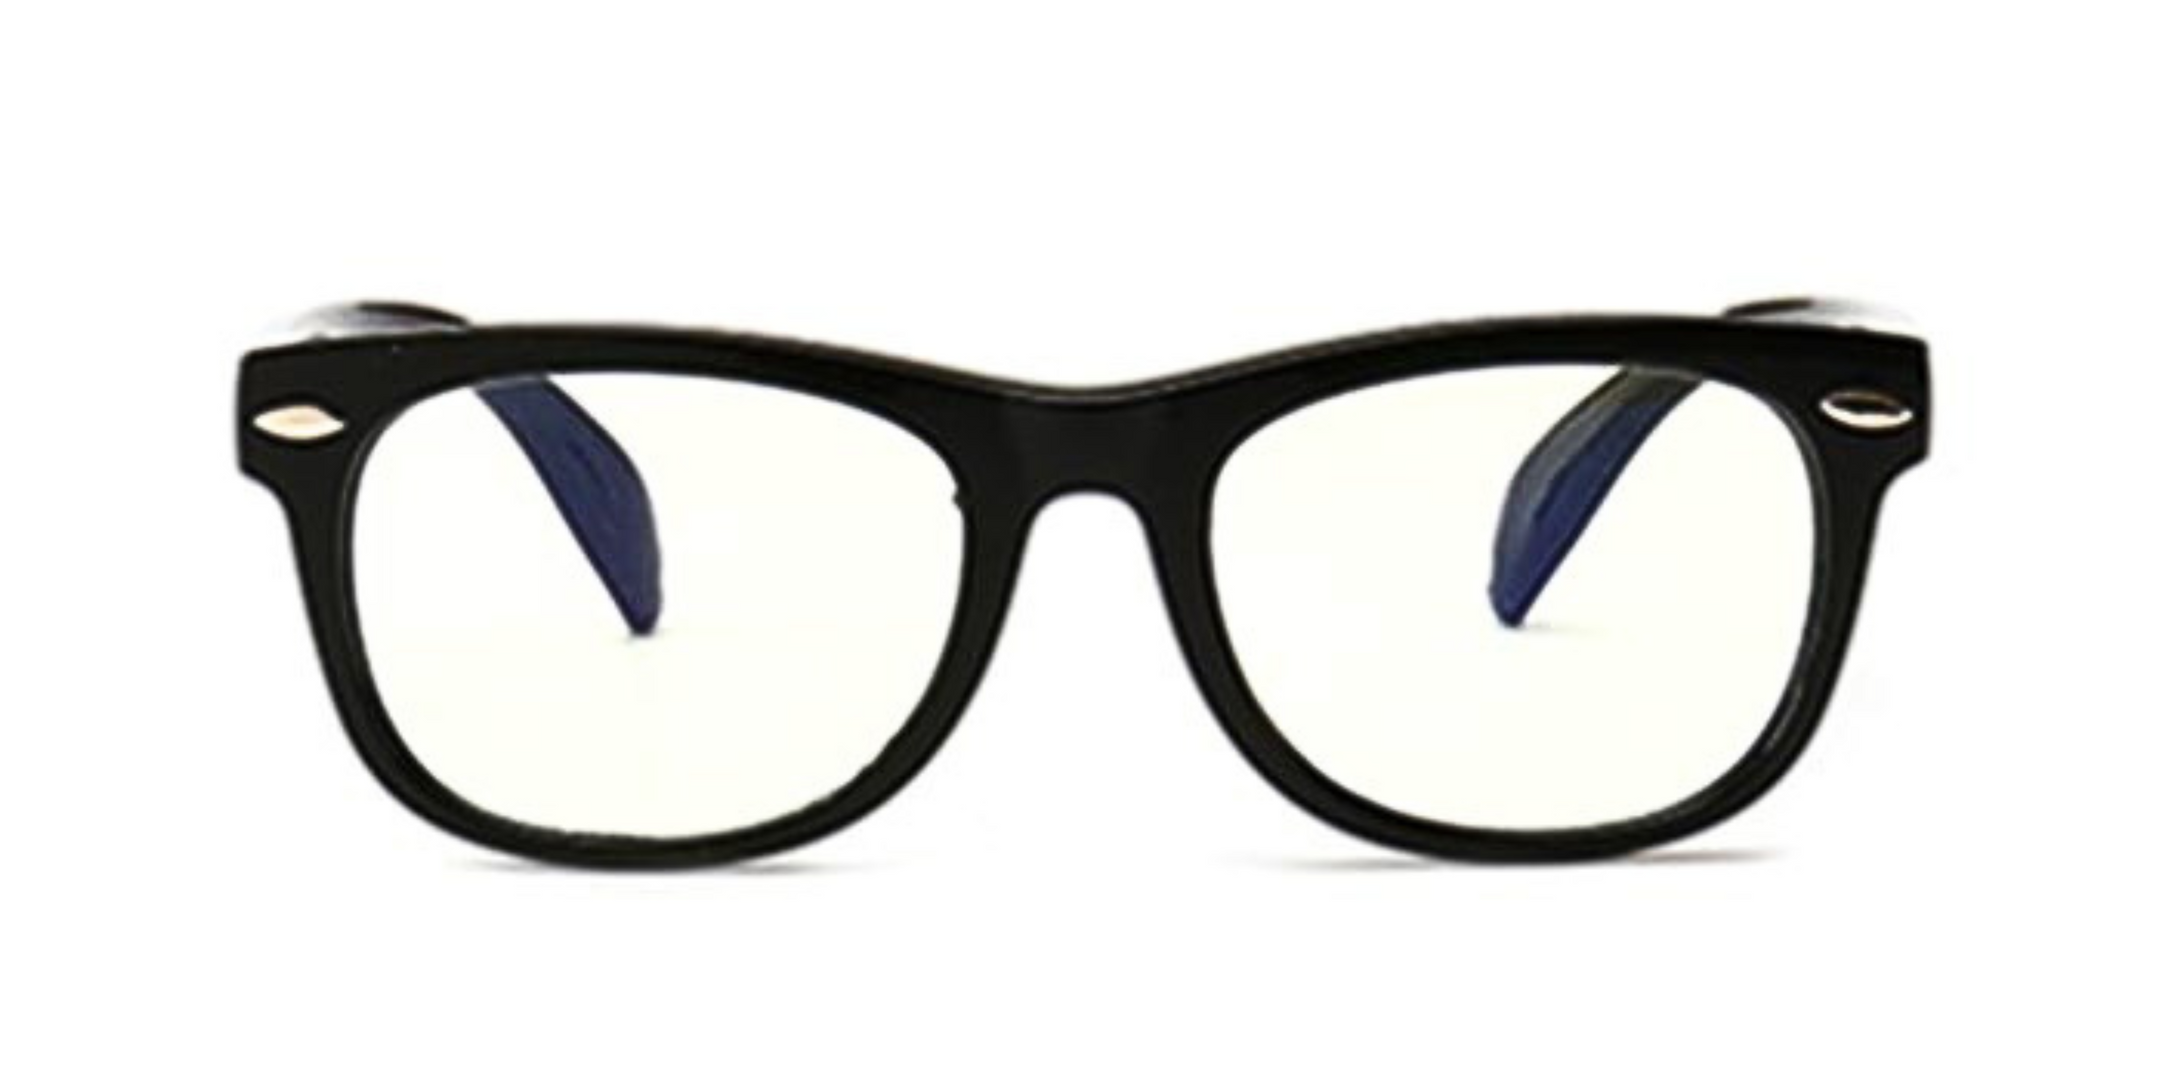 LITTLEBOSS ANTI-BLUE LIGHT GLASSES - (Black) - LadyBoss Glasses